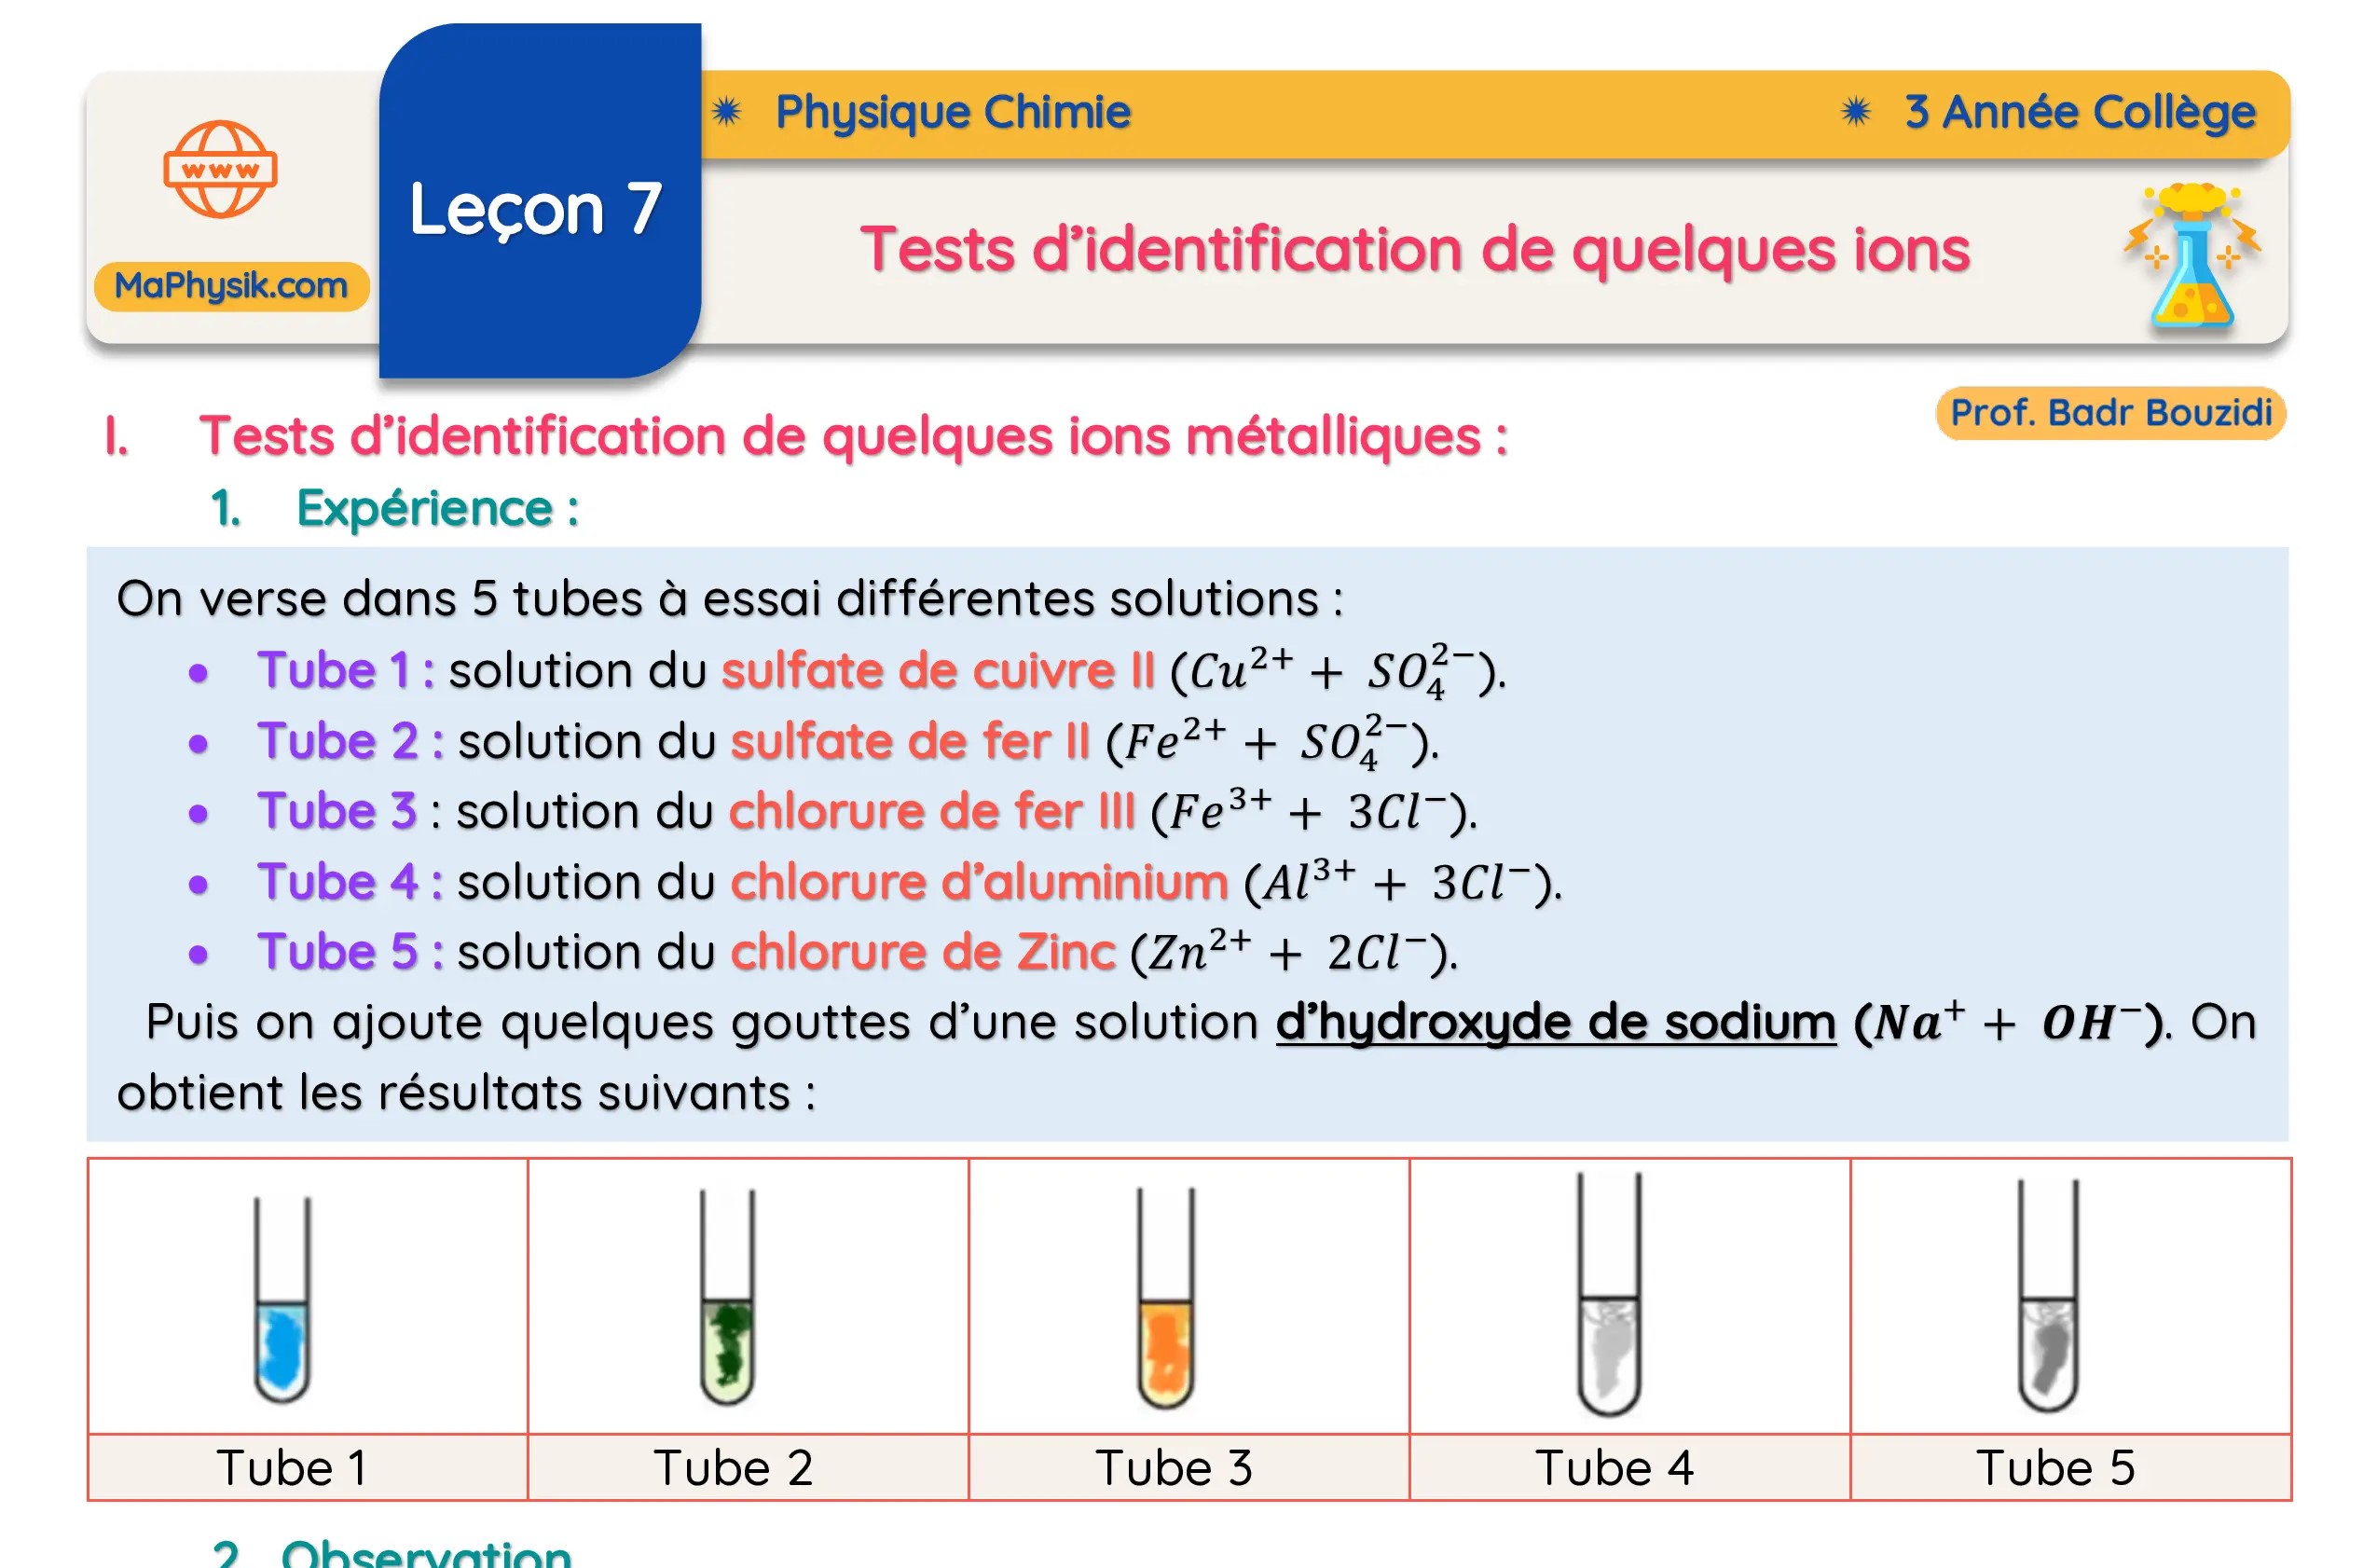 Leçon 7: Test d'identification de quelques ions| Phyique chimie | 3 Année Colège